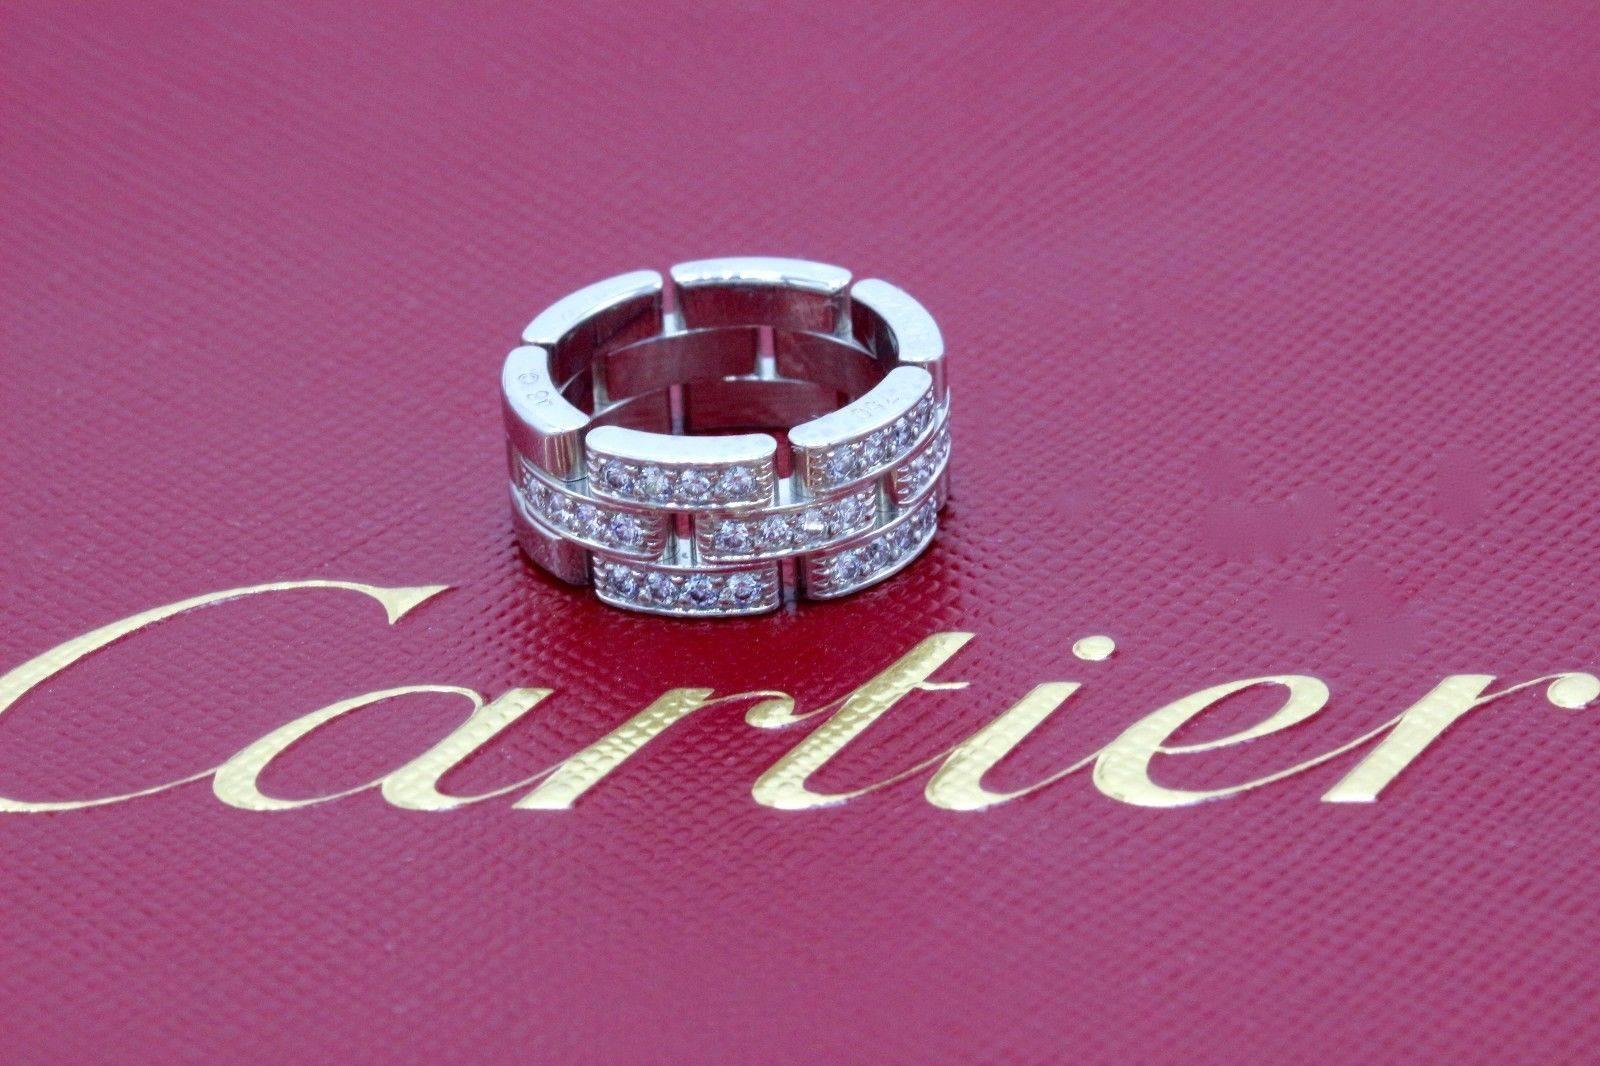 Marque : Cartier 
Style : Maillons et chaînes
Année d'achat : 2005
Taille de l'anneau : 48 / 4 U.S
Métal : Or blanc 18K 
Pureté du métal : 750 
Poinçon : 